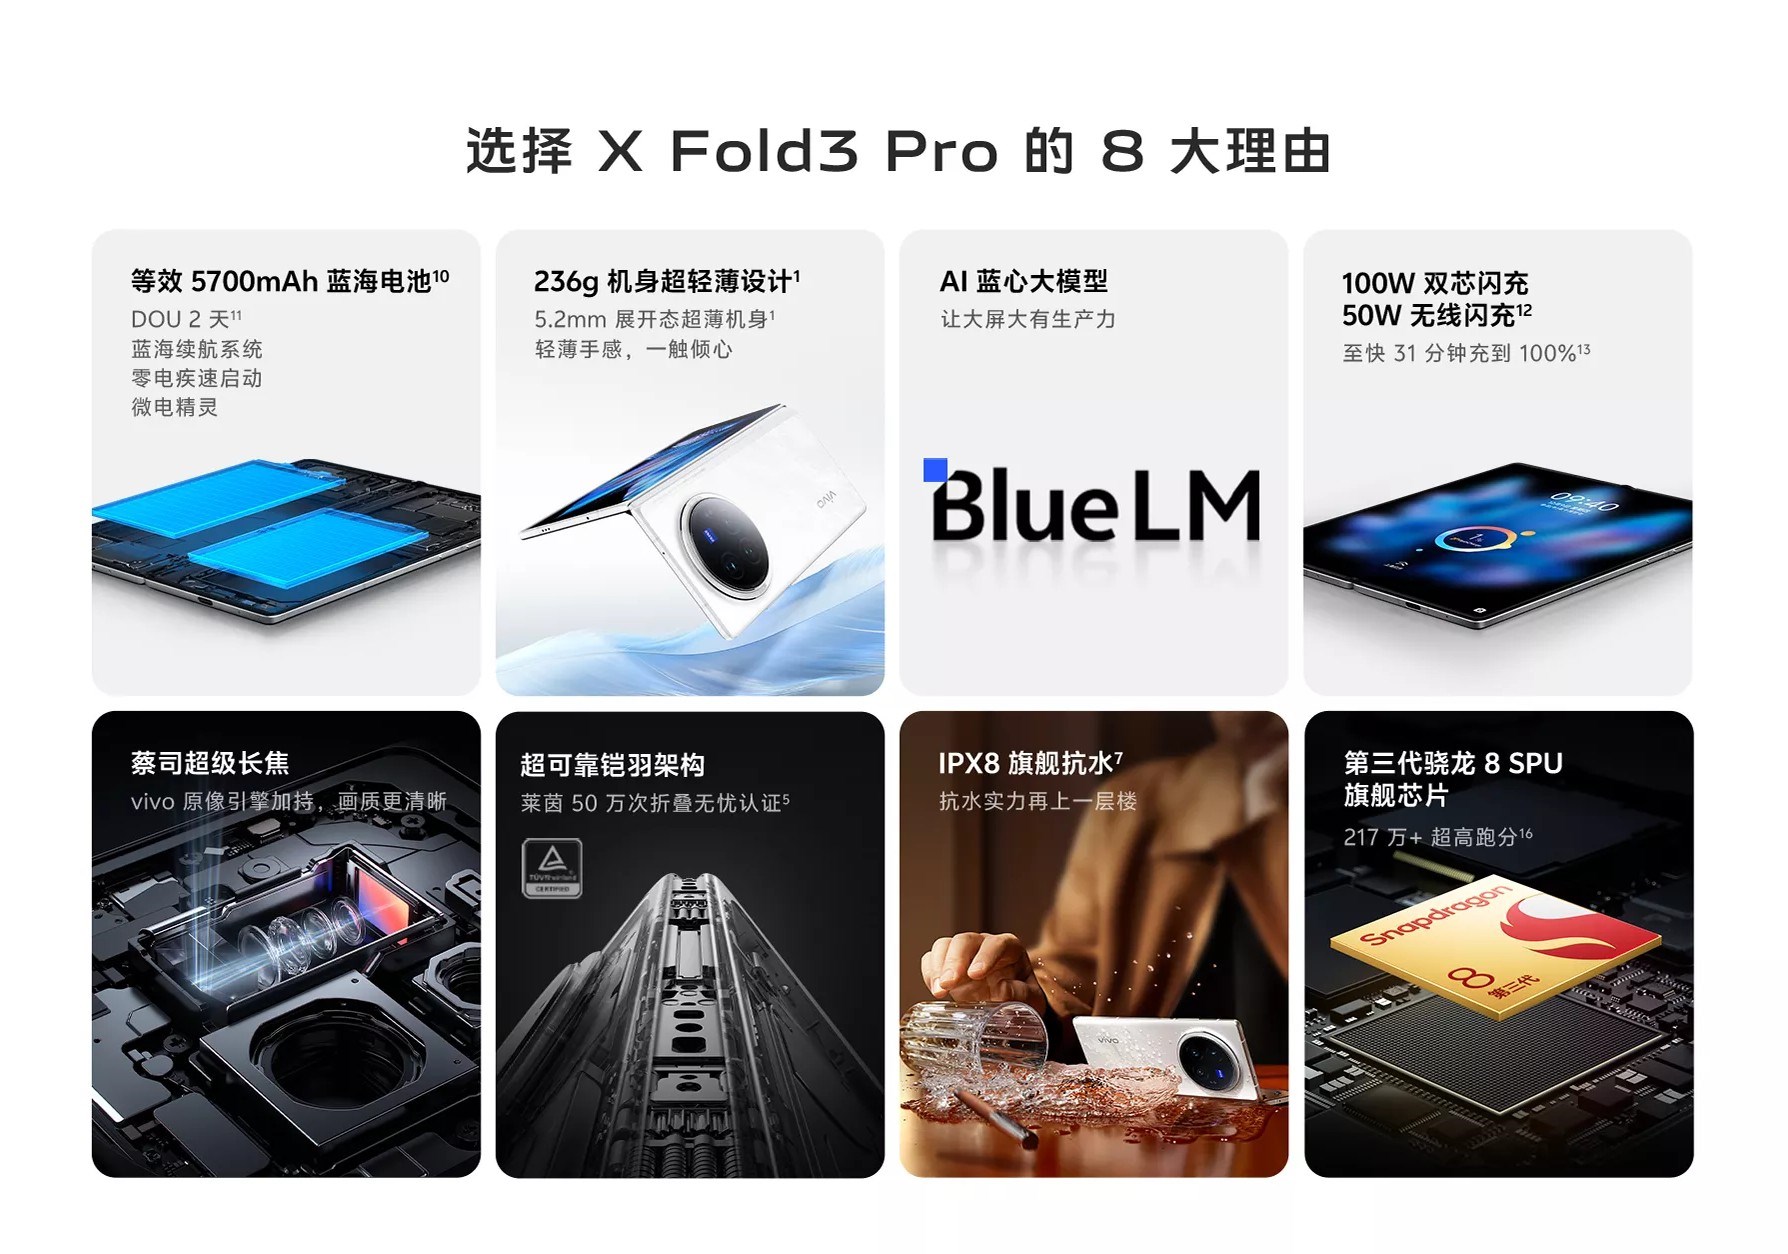 vivo X Fold3 Pro tanıtıldı: İşte özellikleri ve fiyatı